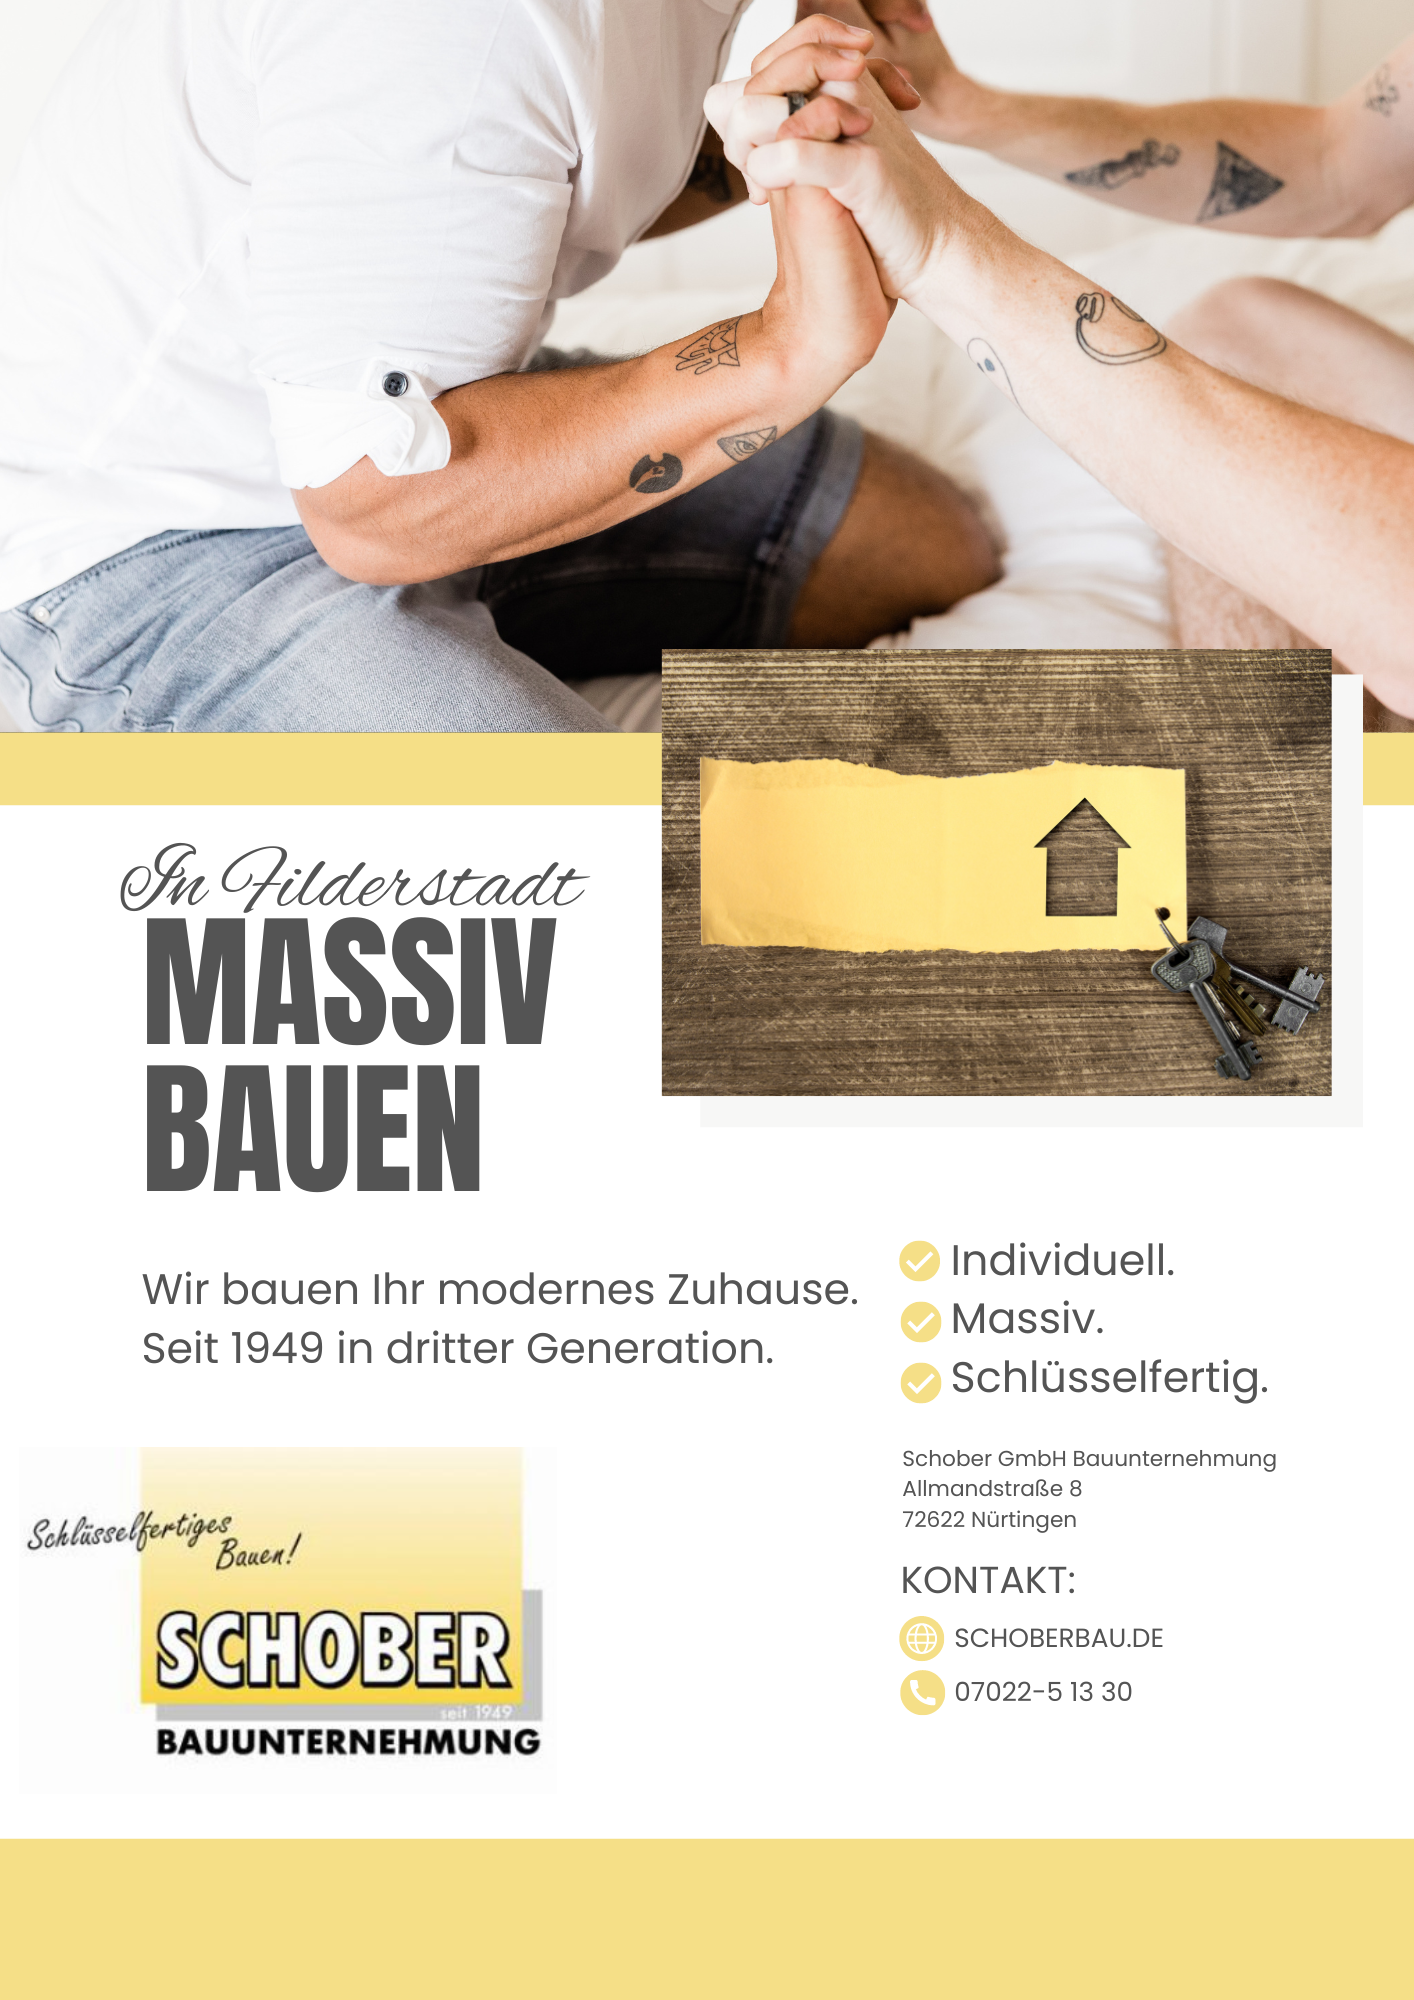 Schlüsselfertig bauen mit Schober in Filderstadt